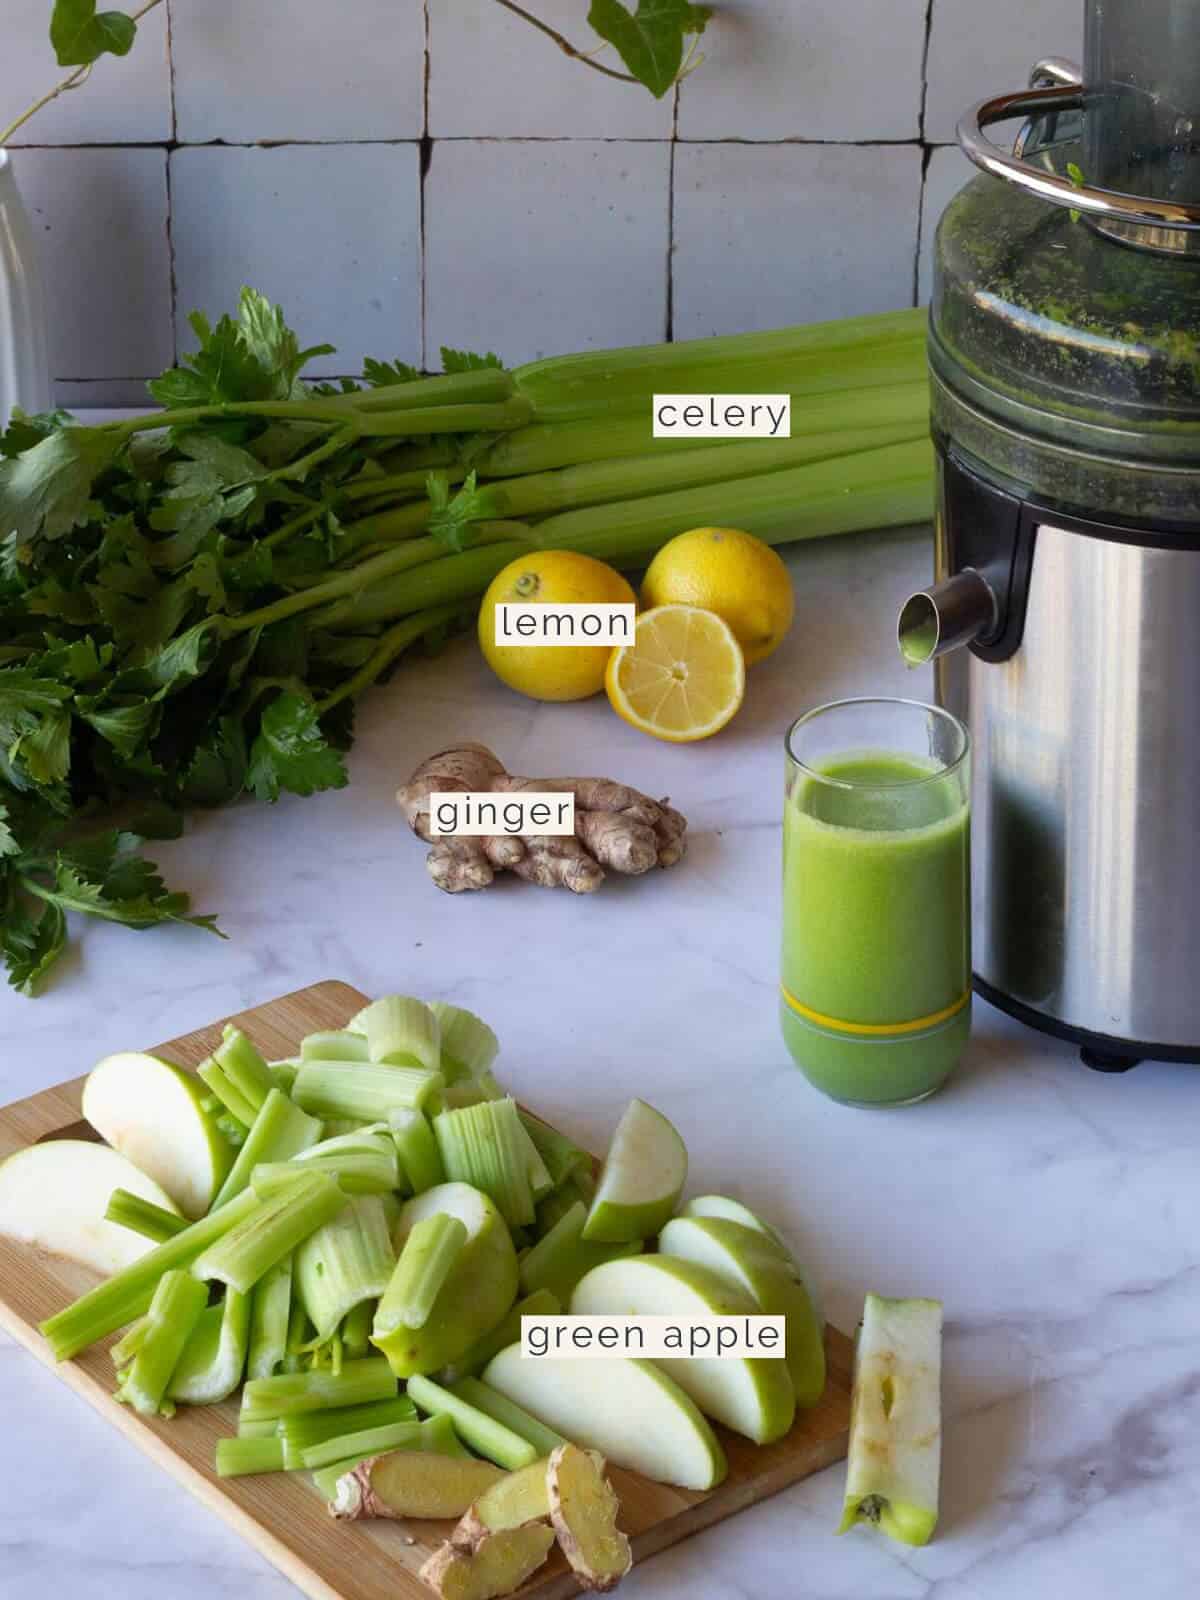 juicing celery juice with a juicer